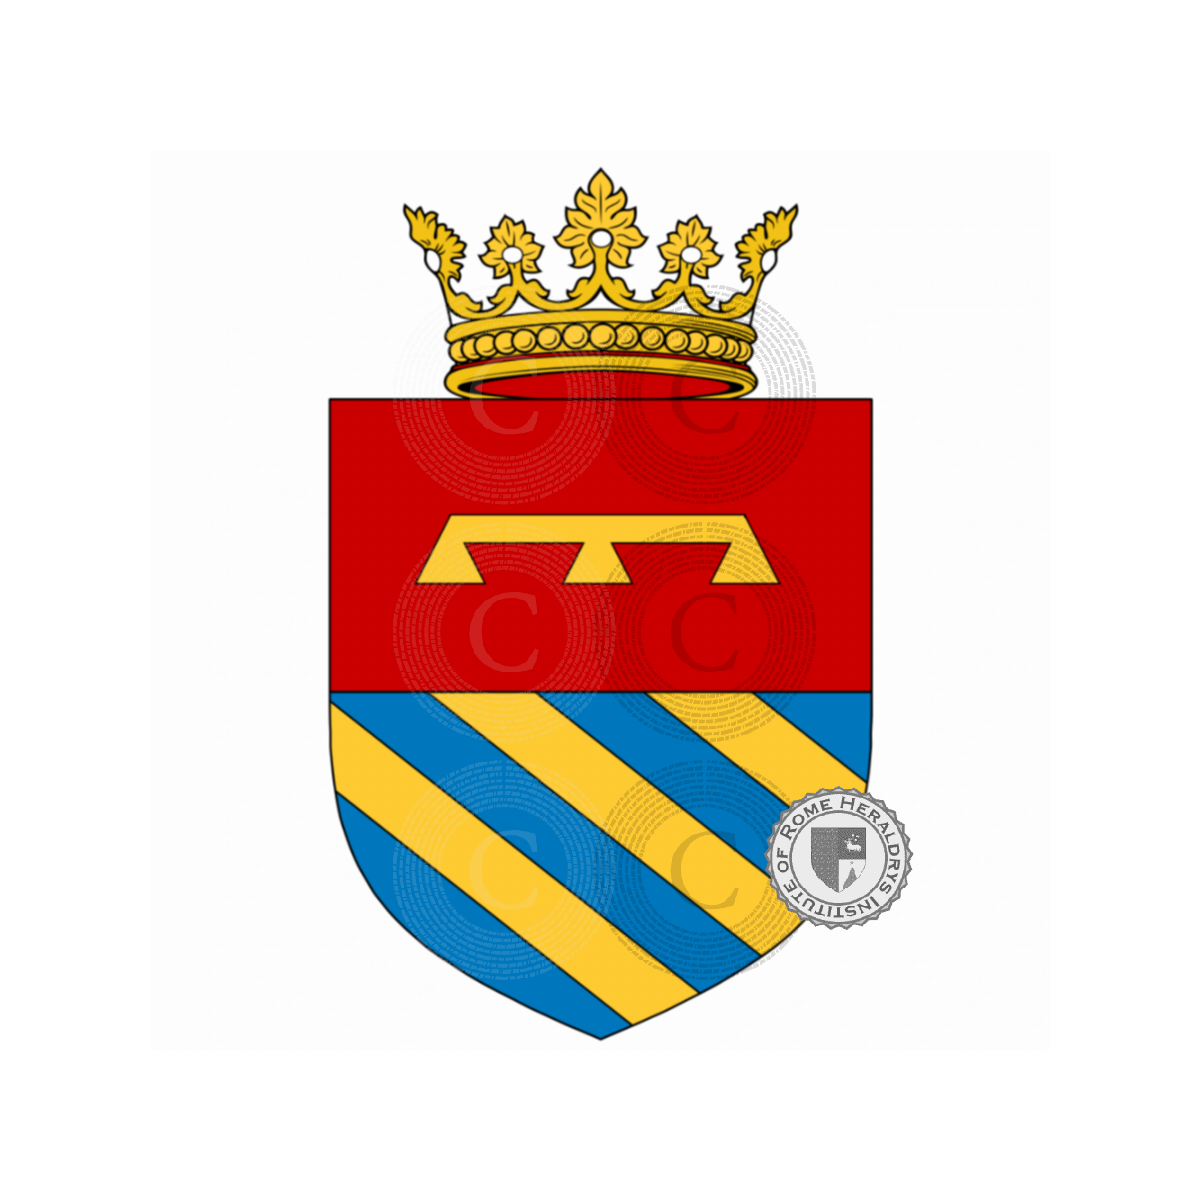 Wappen der FamilieDolci, del Doce,Duca,Duce